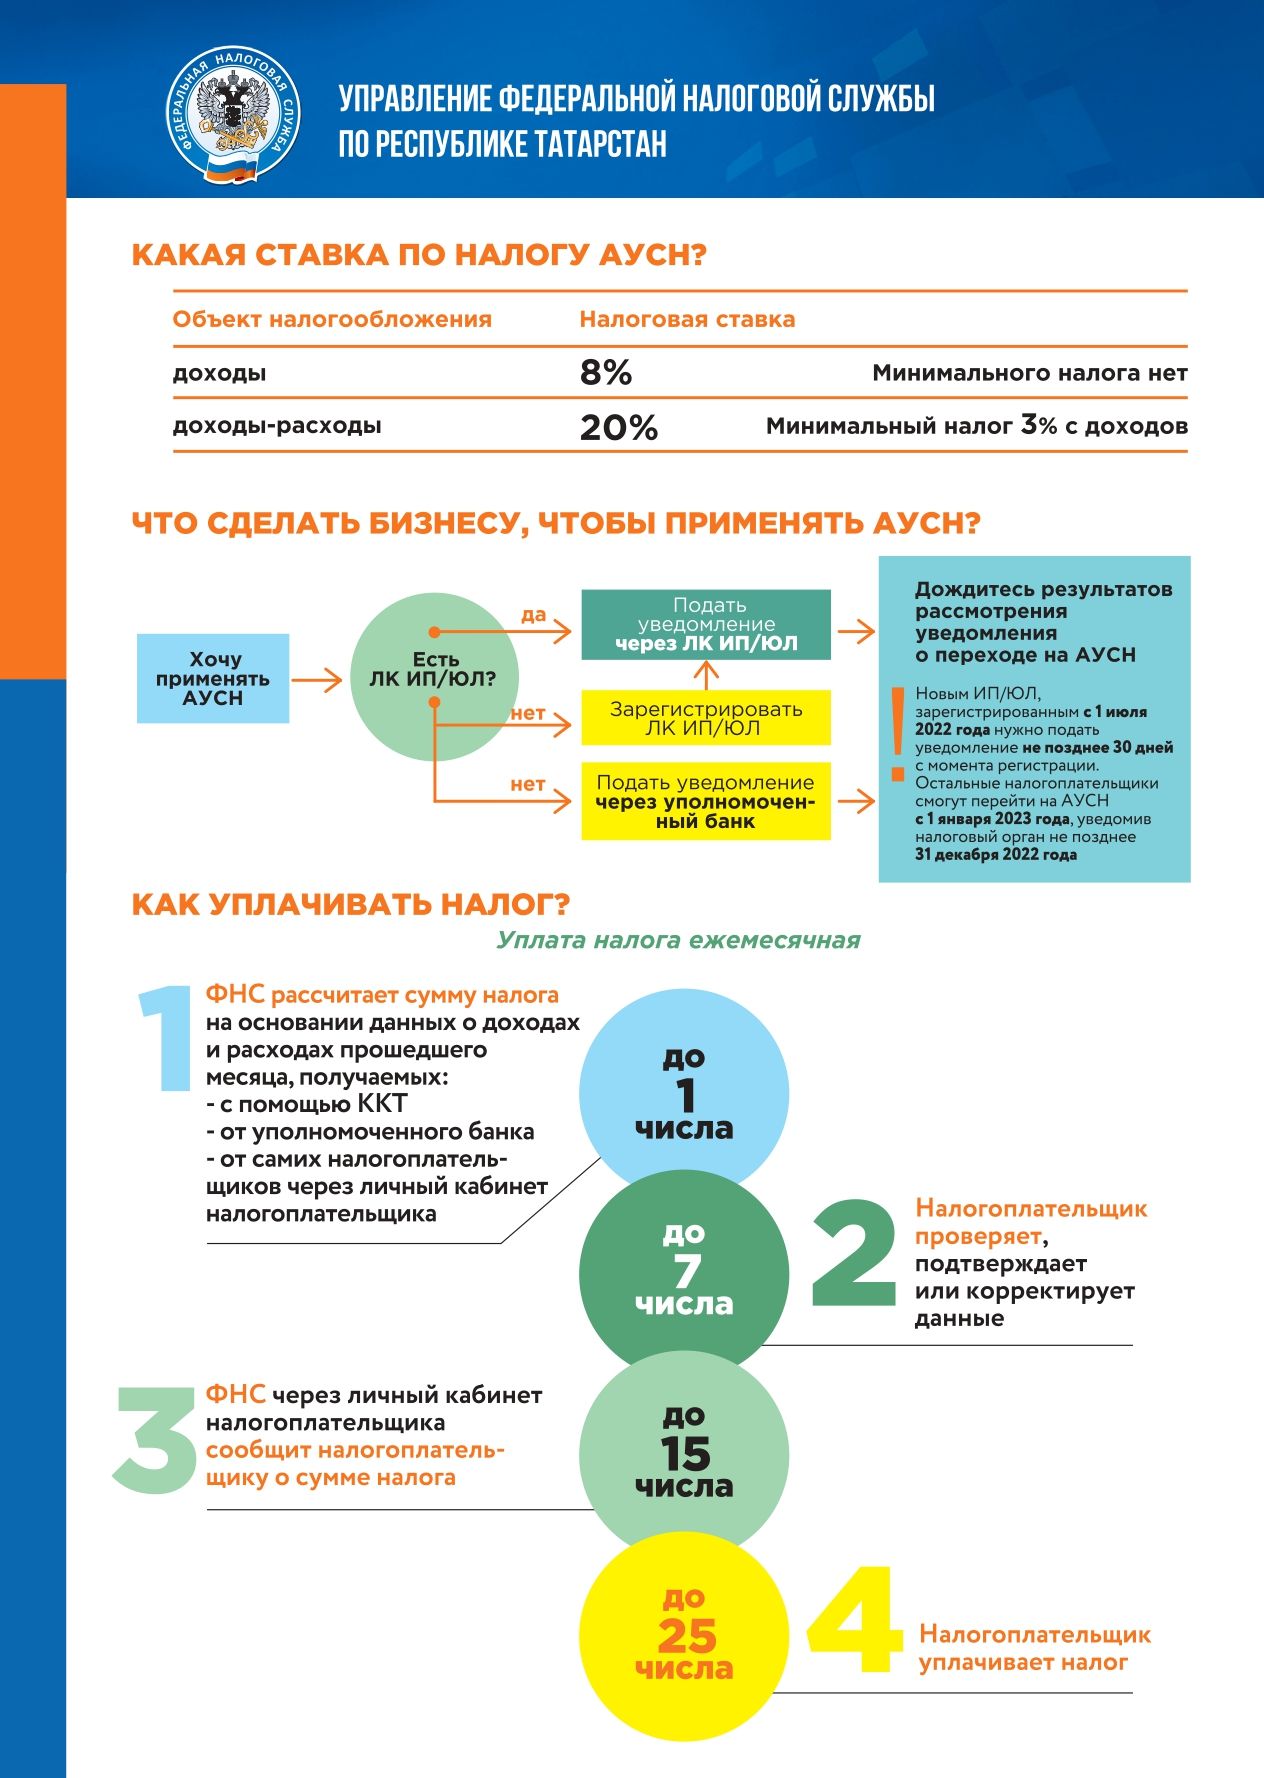 С 1 июля 2022 года в Республике Татарстан стартует эксперимент по введению нового специализированного налогового режима